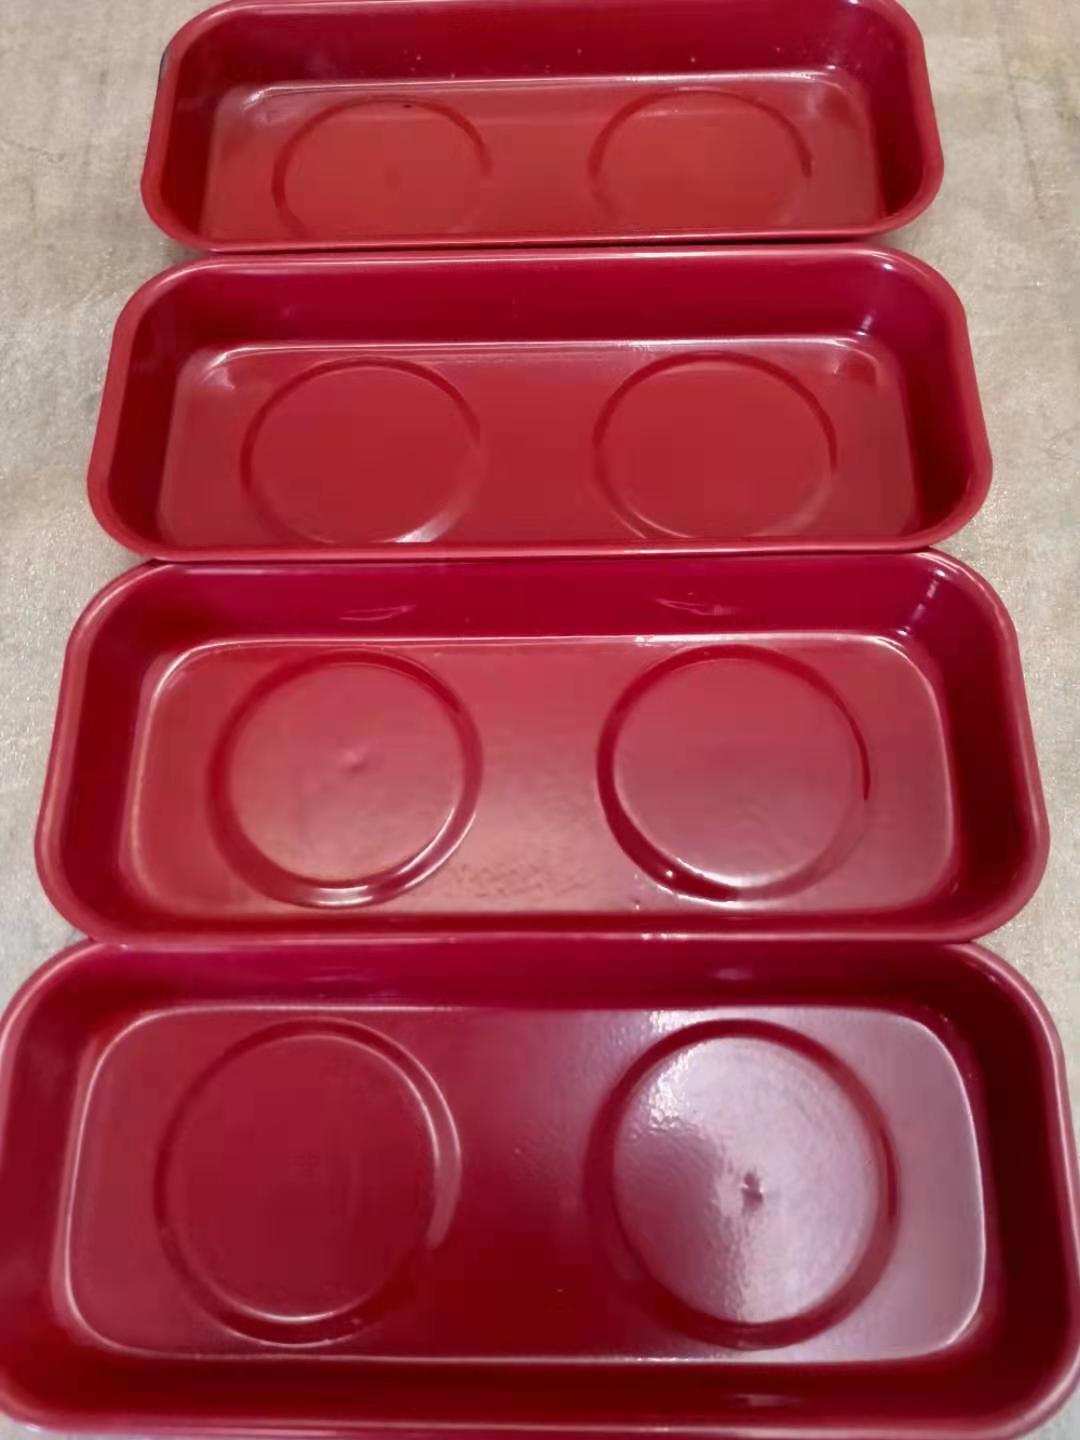 红色喷塑磁性收纳碗 汽保机修磁力盘 底部装配磁铁 网上热销磁碗 可以牢牢吸附在铁制品上在倒挂状态磁碗和小零件都不会滑落6